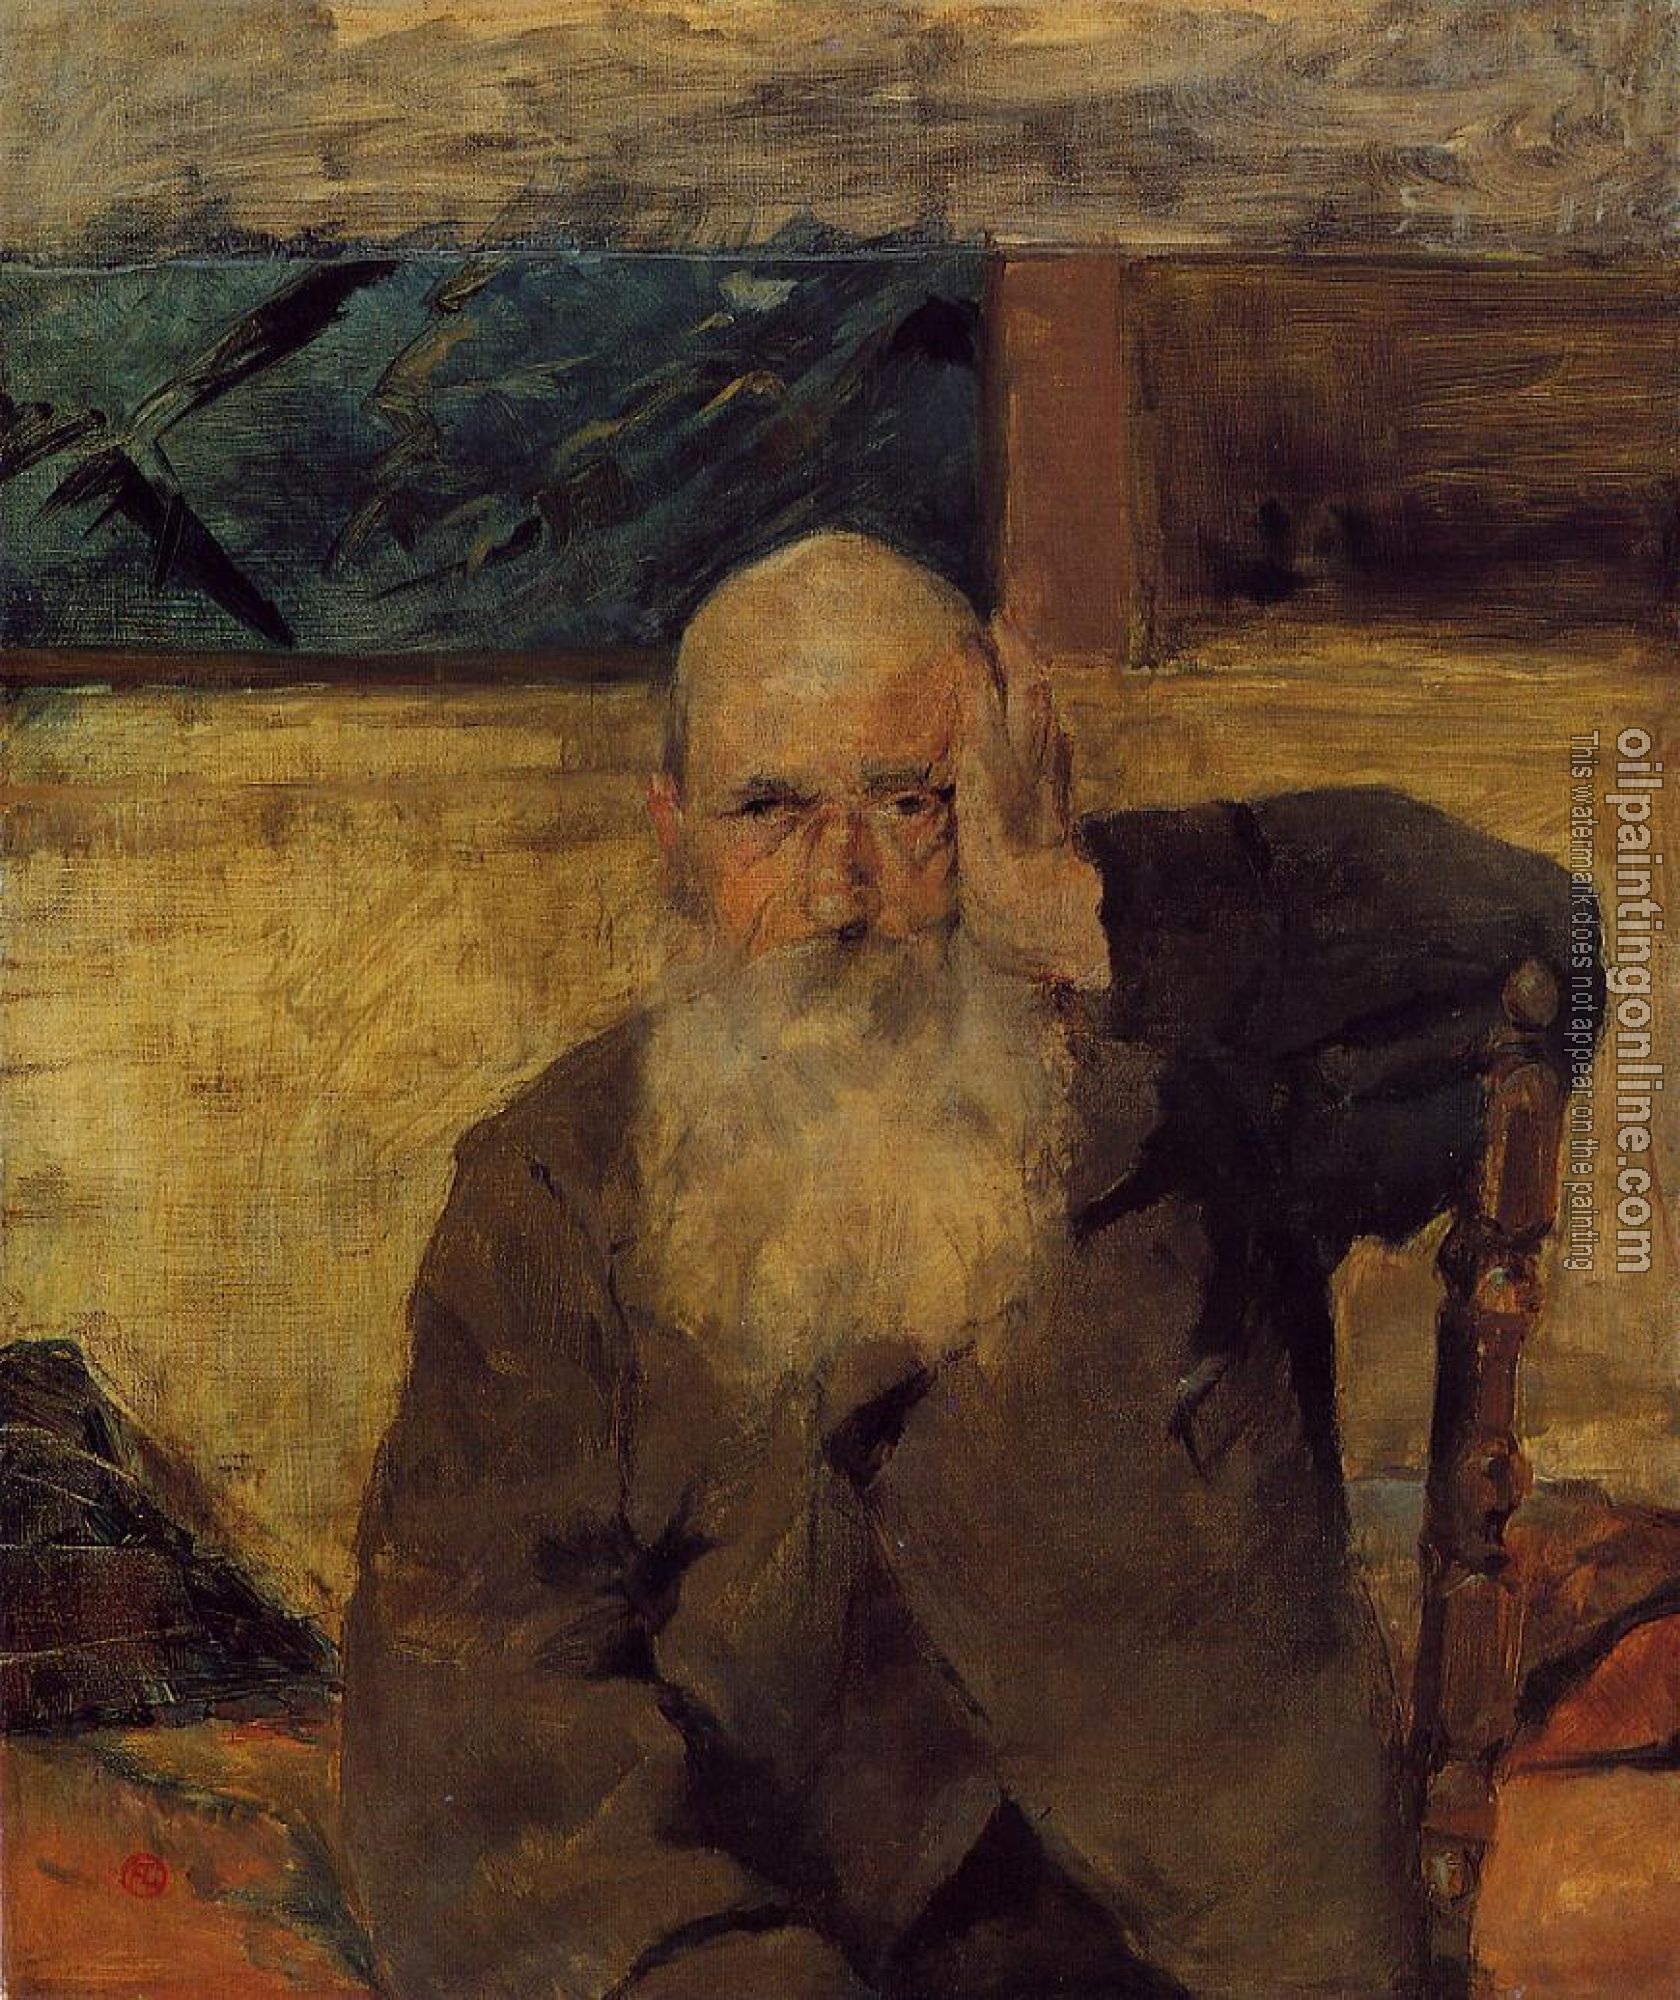 Toulouse-Lautrec, Henri de - Old Man at Celeyran